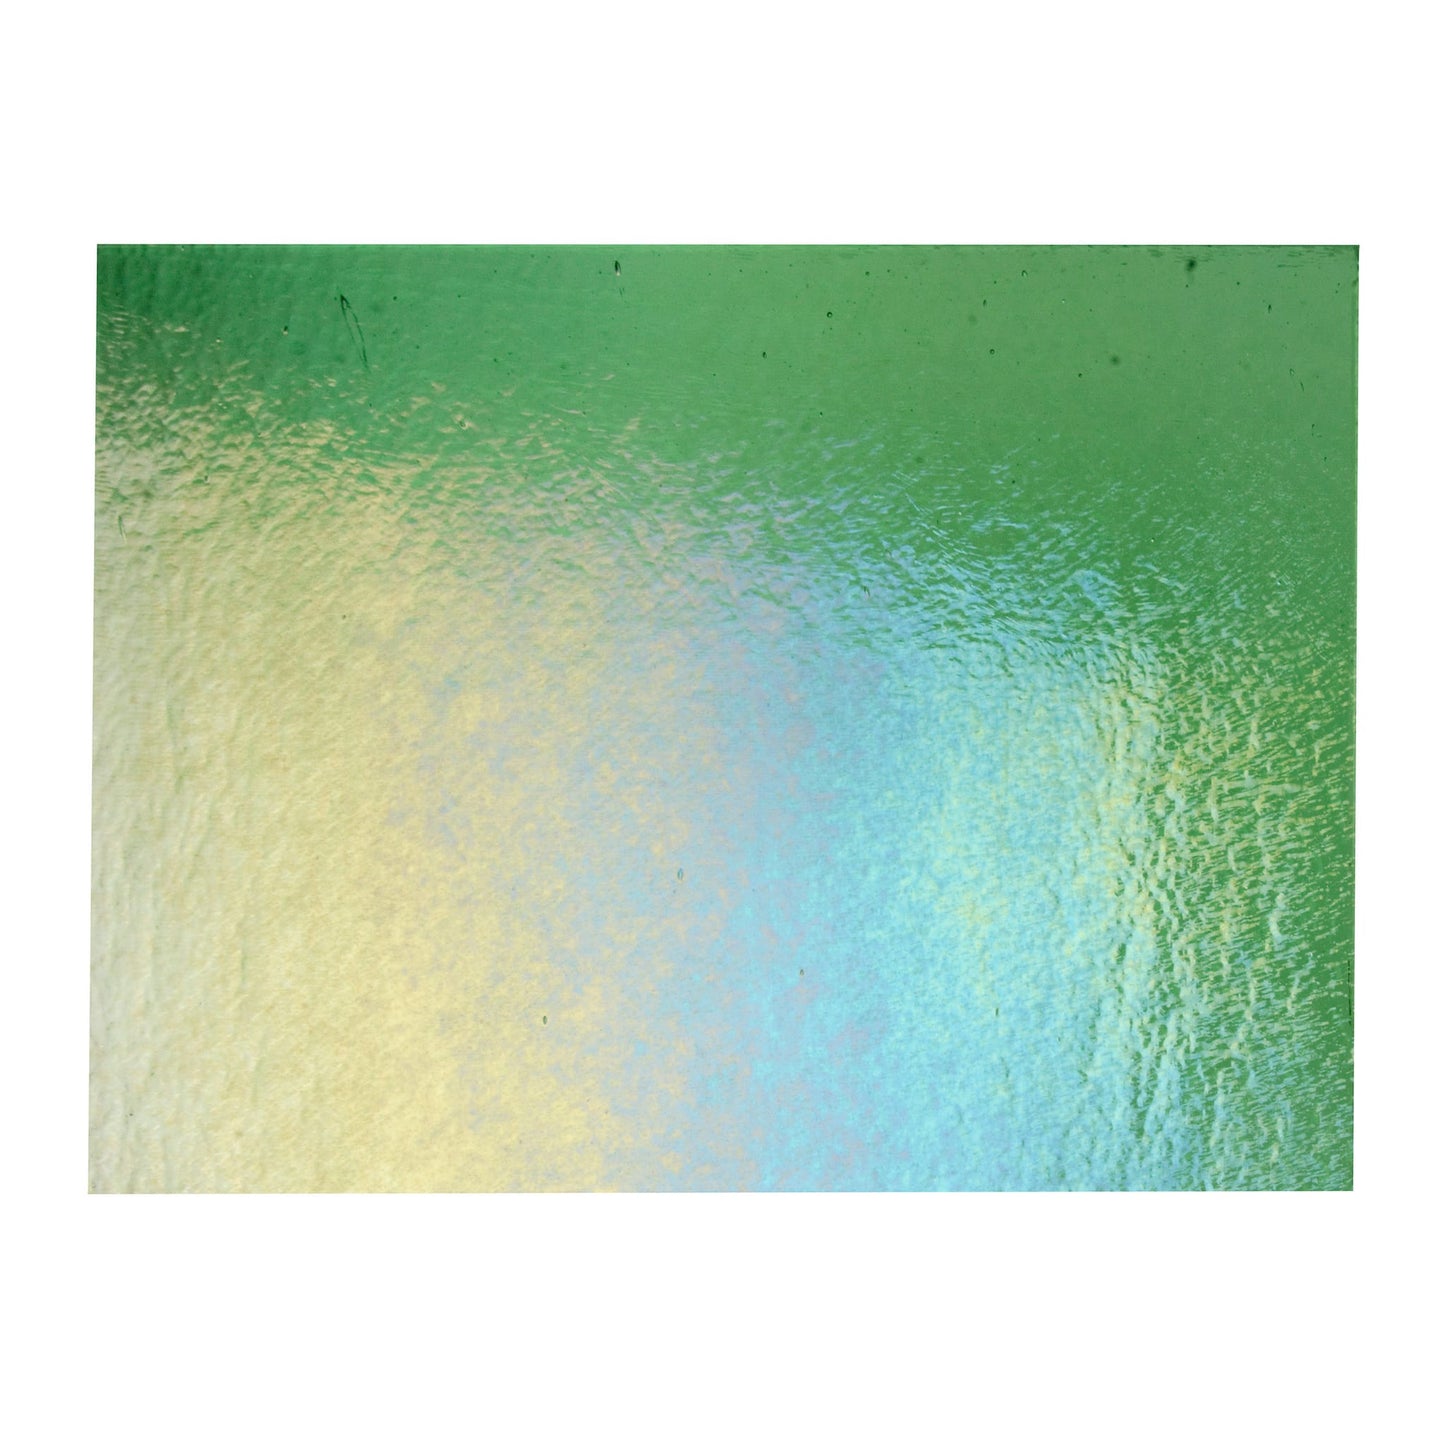 Bullseye COE90 Fusing Glass 001107 Light Green, Iridescent, Rainbow Handy Sheet